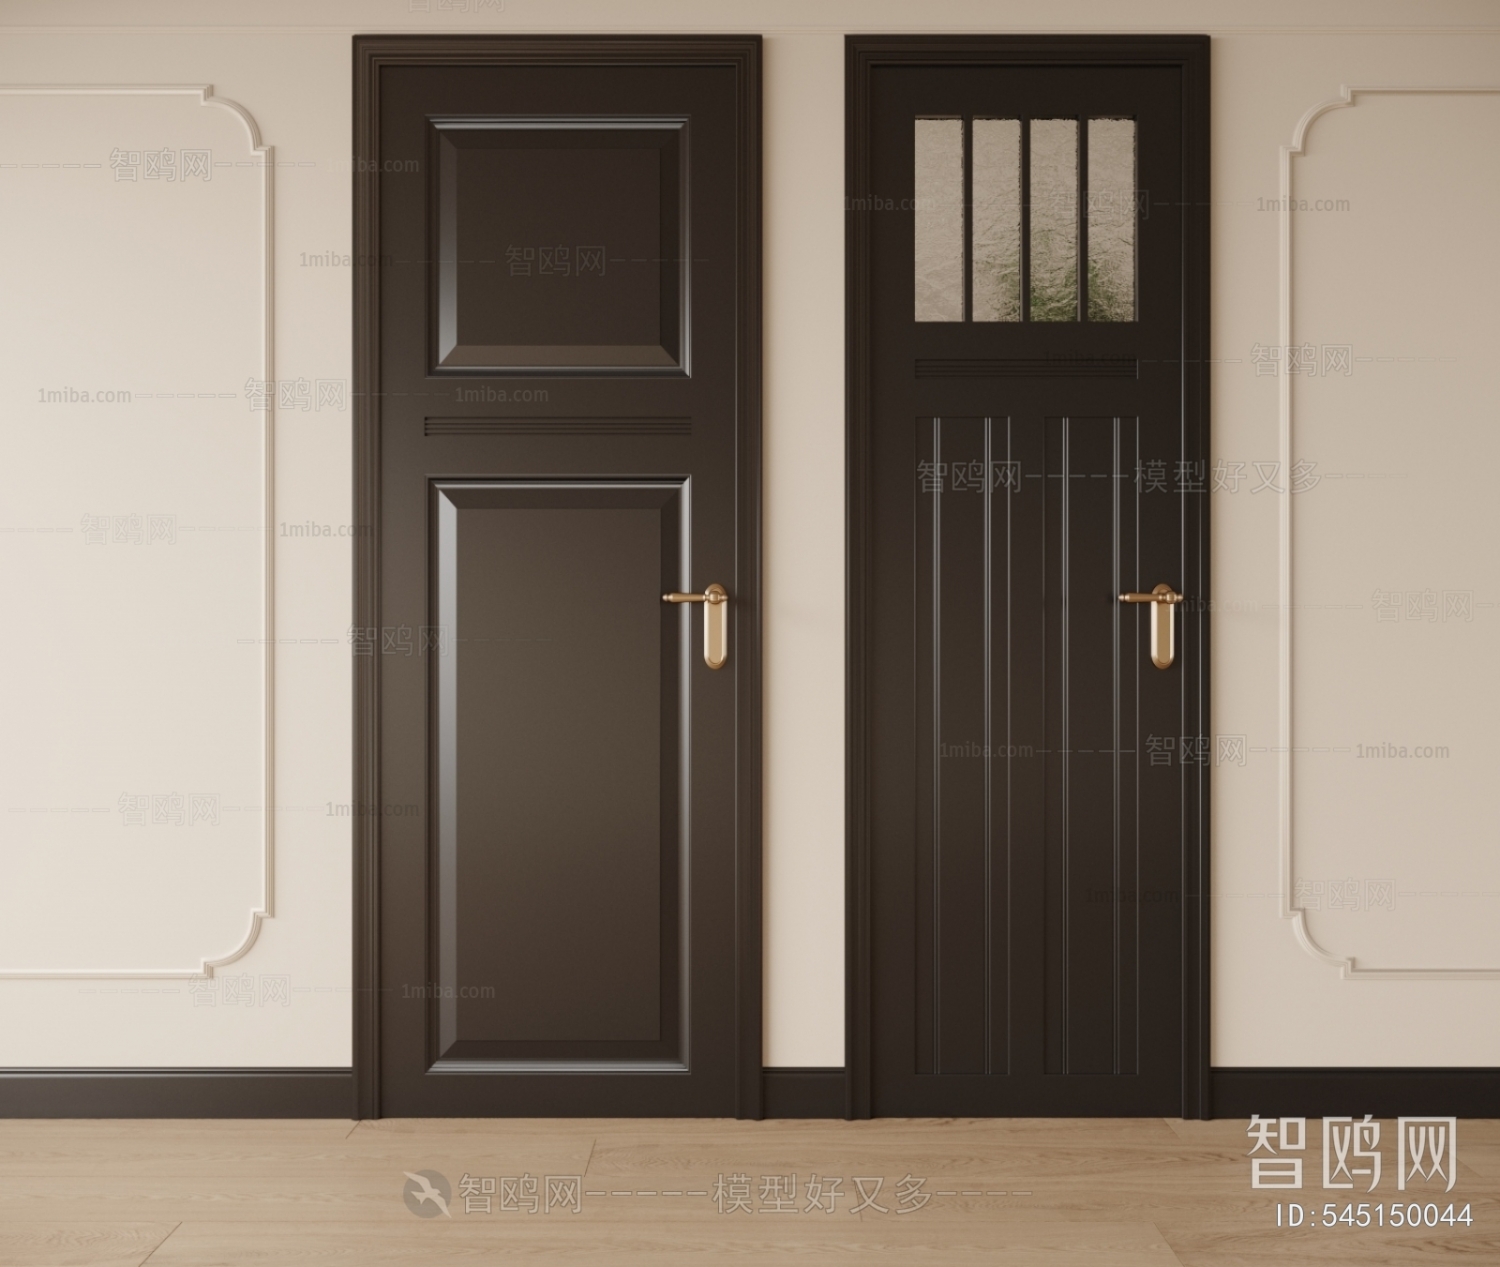 Modern Wabi-sabi Style Single Door